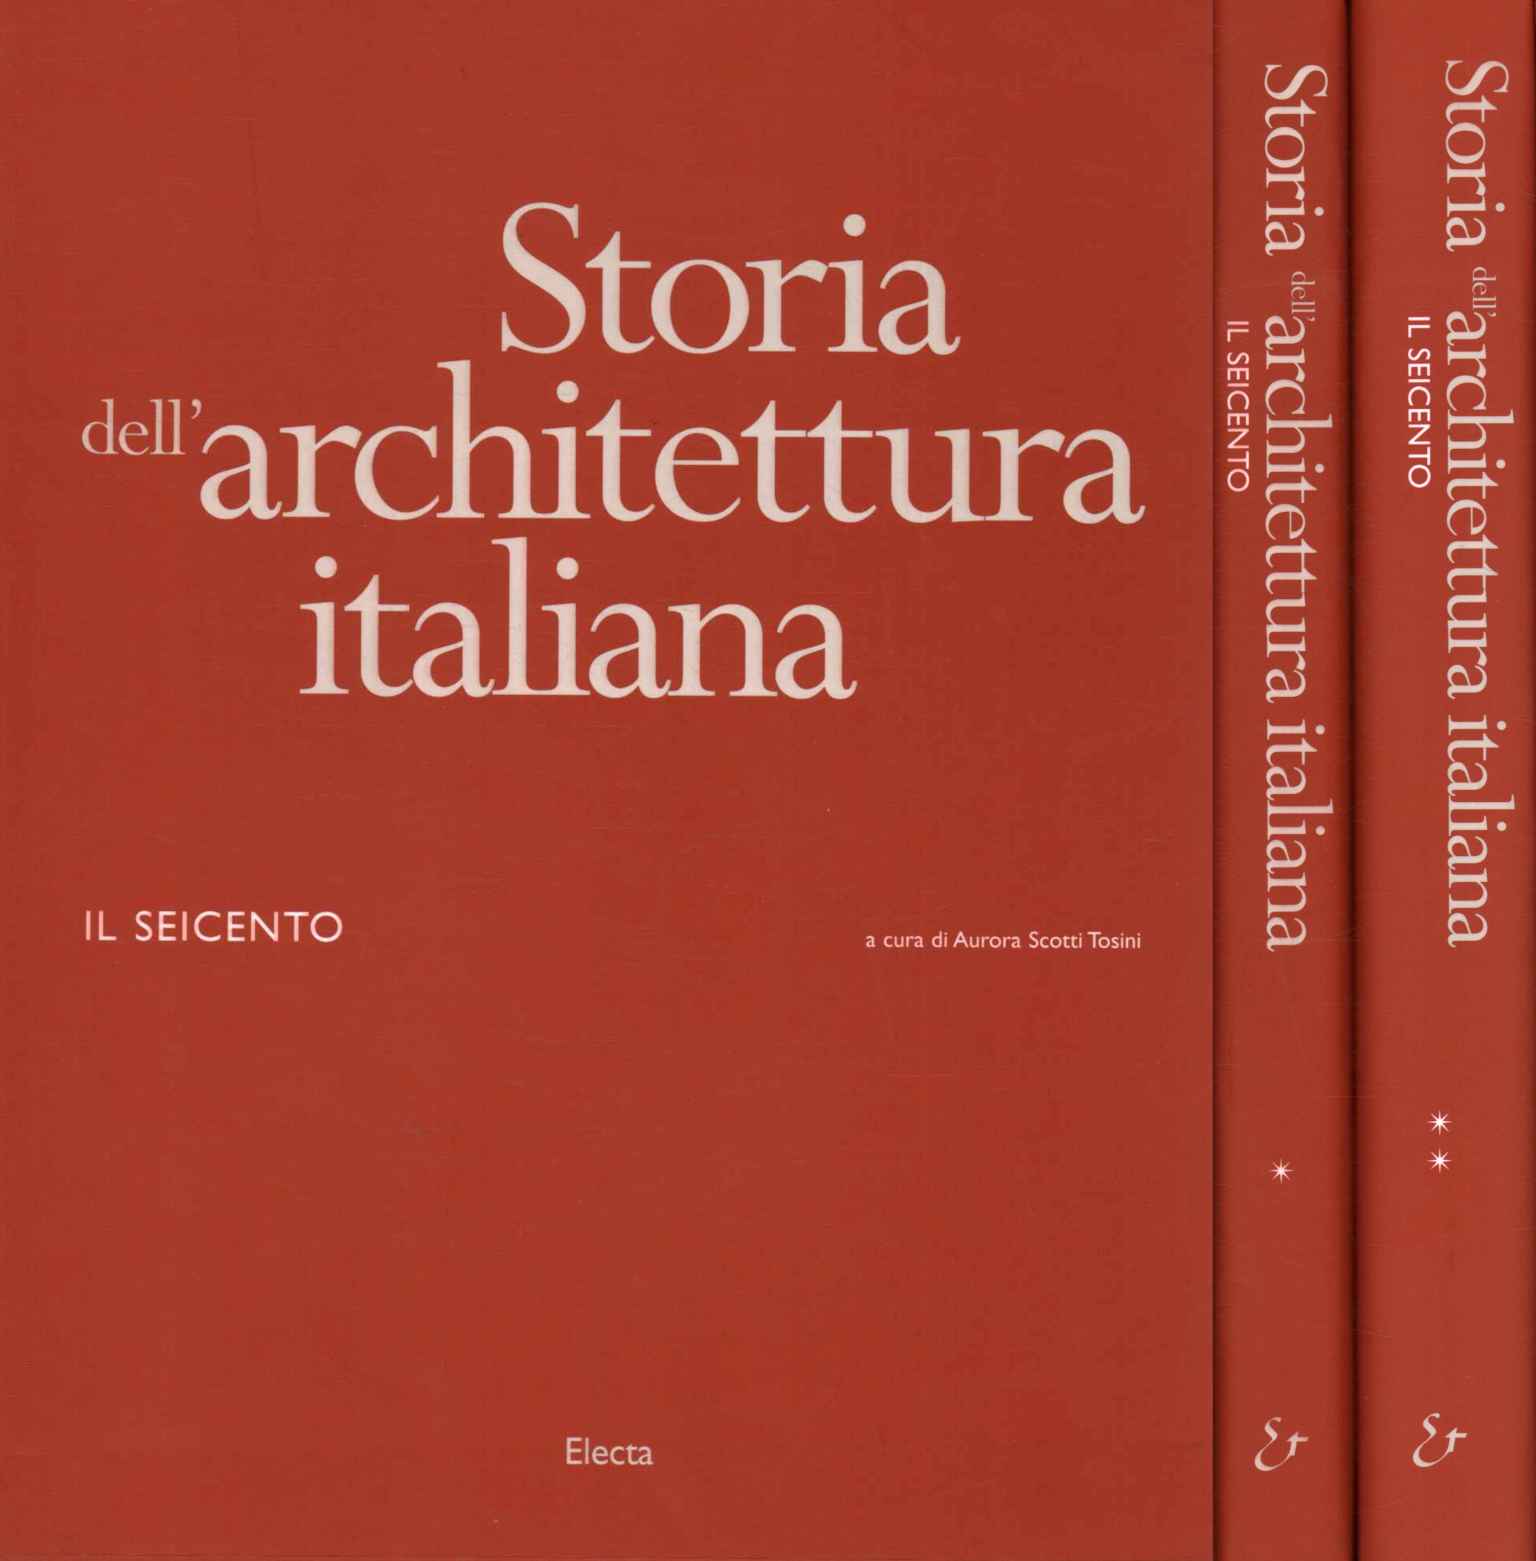 Historia de la arquitectura italiana.%,Historia de la arquitectura italiana.%,Historia de la arquitectura italiana.%